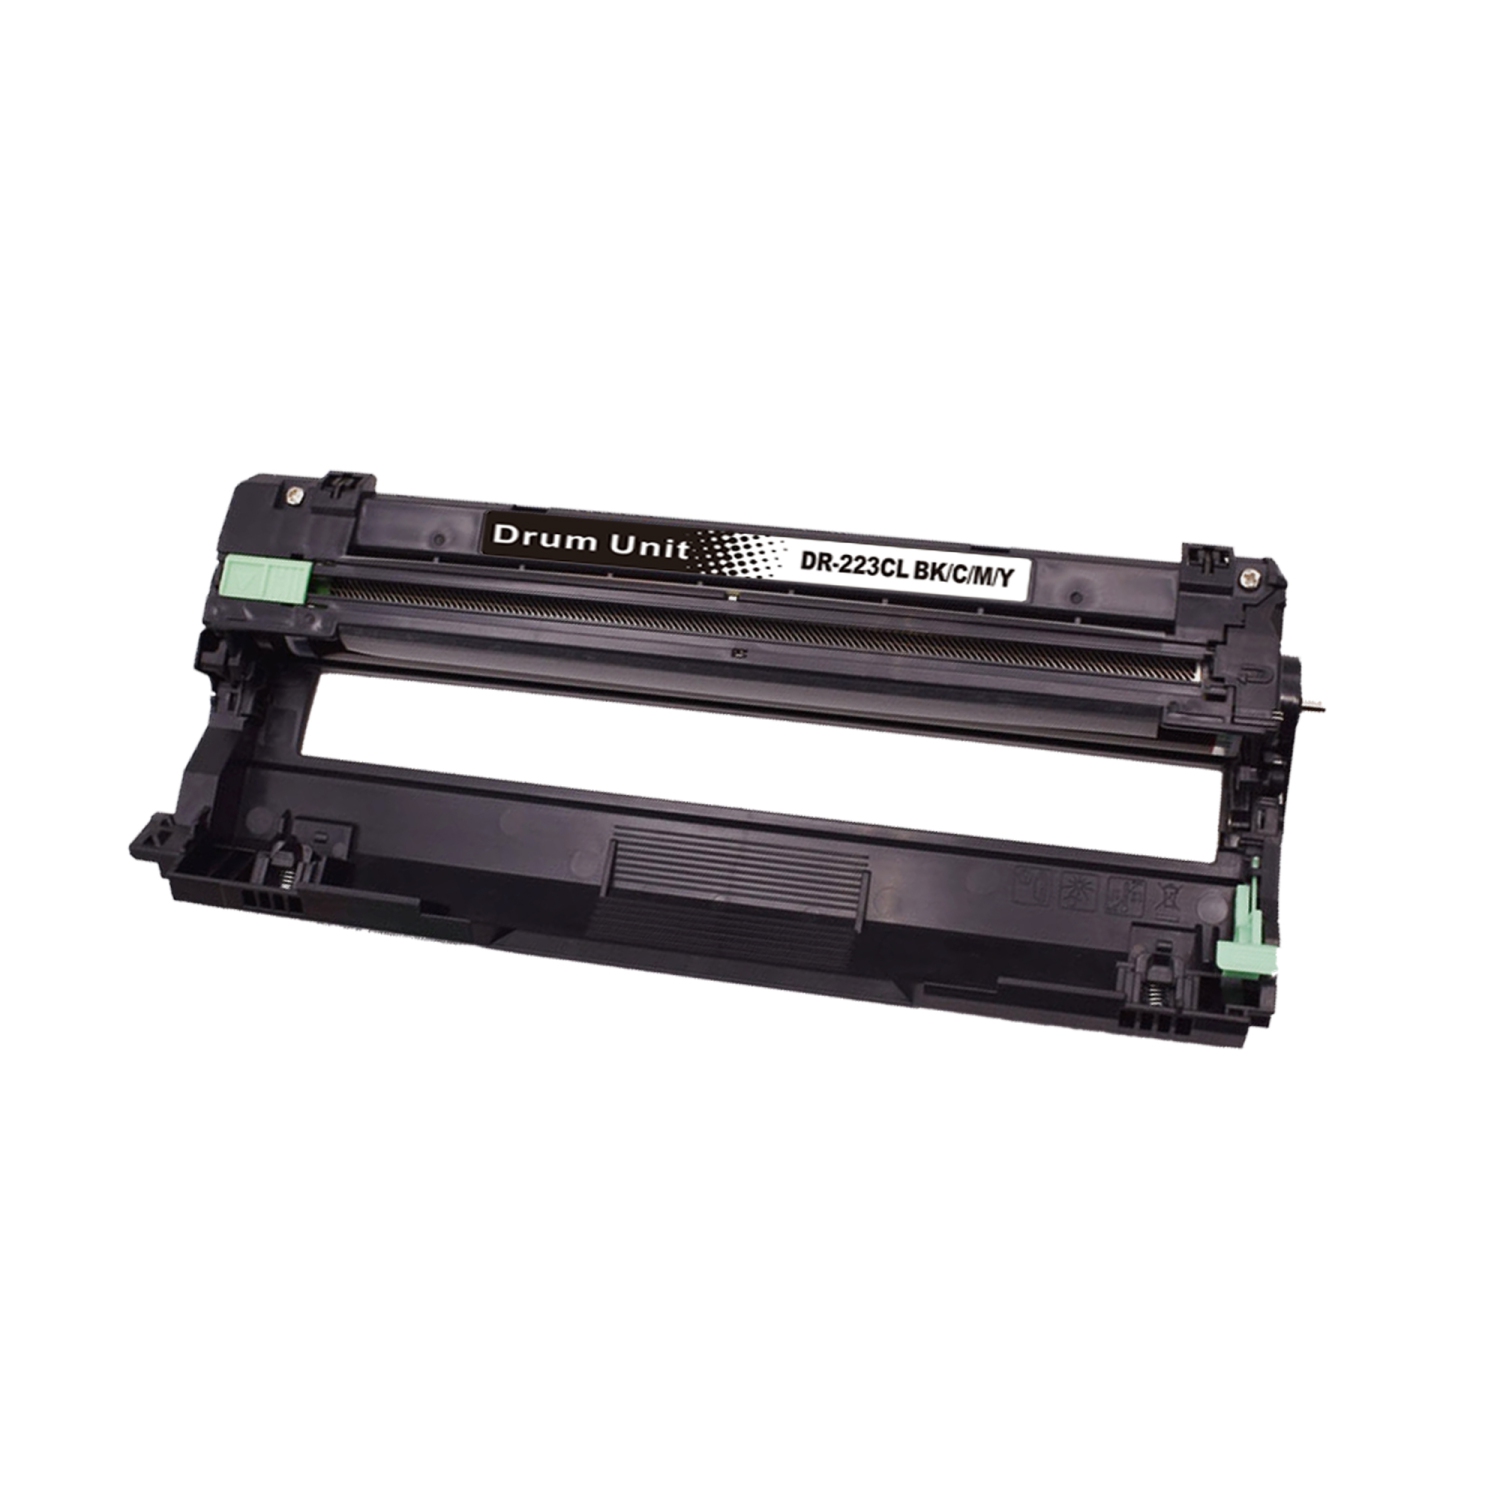 1 Magenta Color Compatible DR223 Drum Unit for Brother DR223CL fit printer: HL-L3210, HL-L3230,HL-L3270, MFC-L3710,MFC3730, DR-223CL